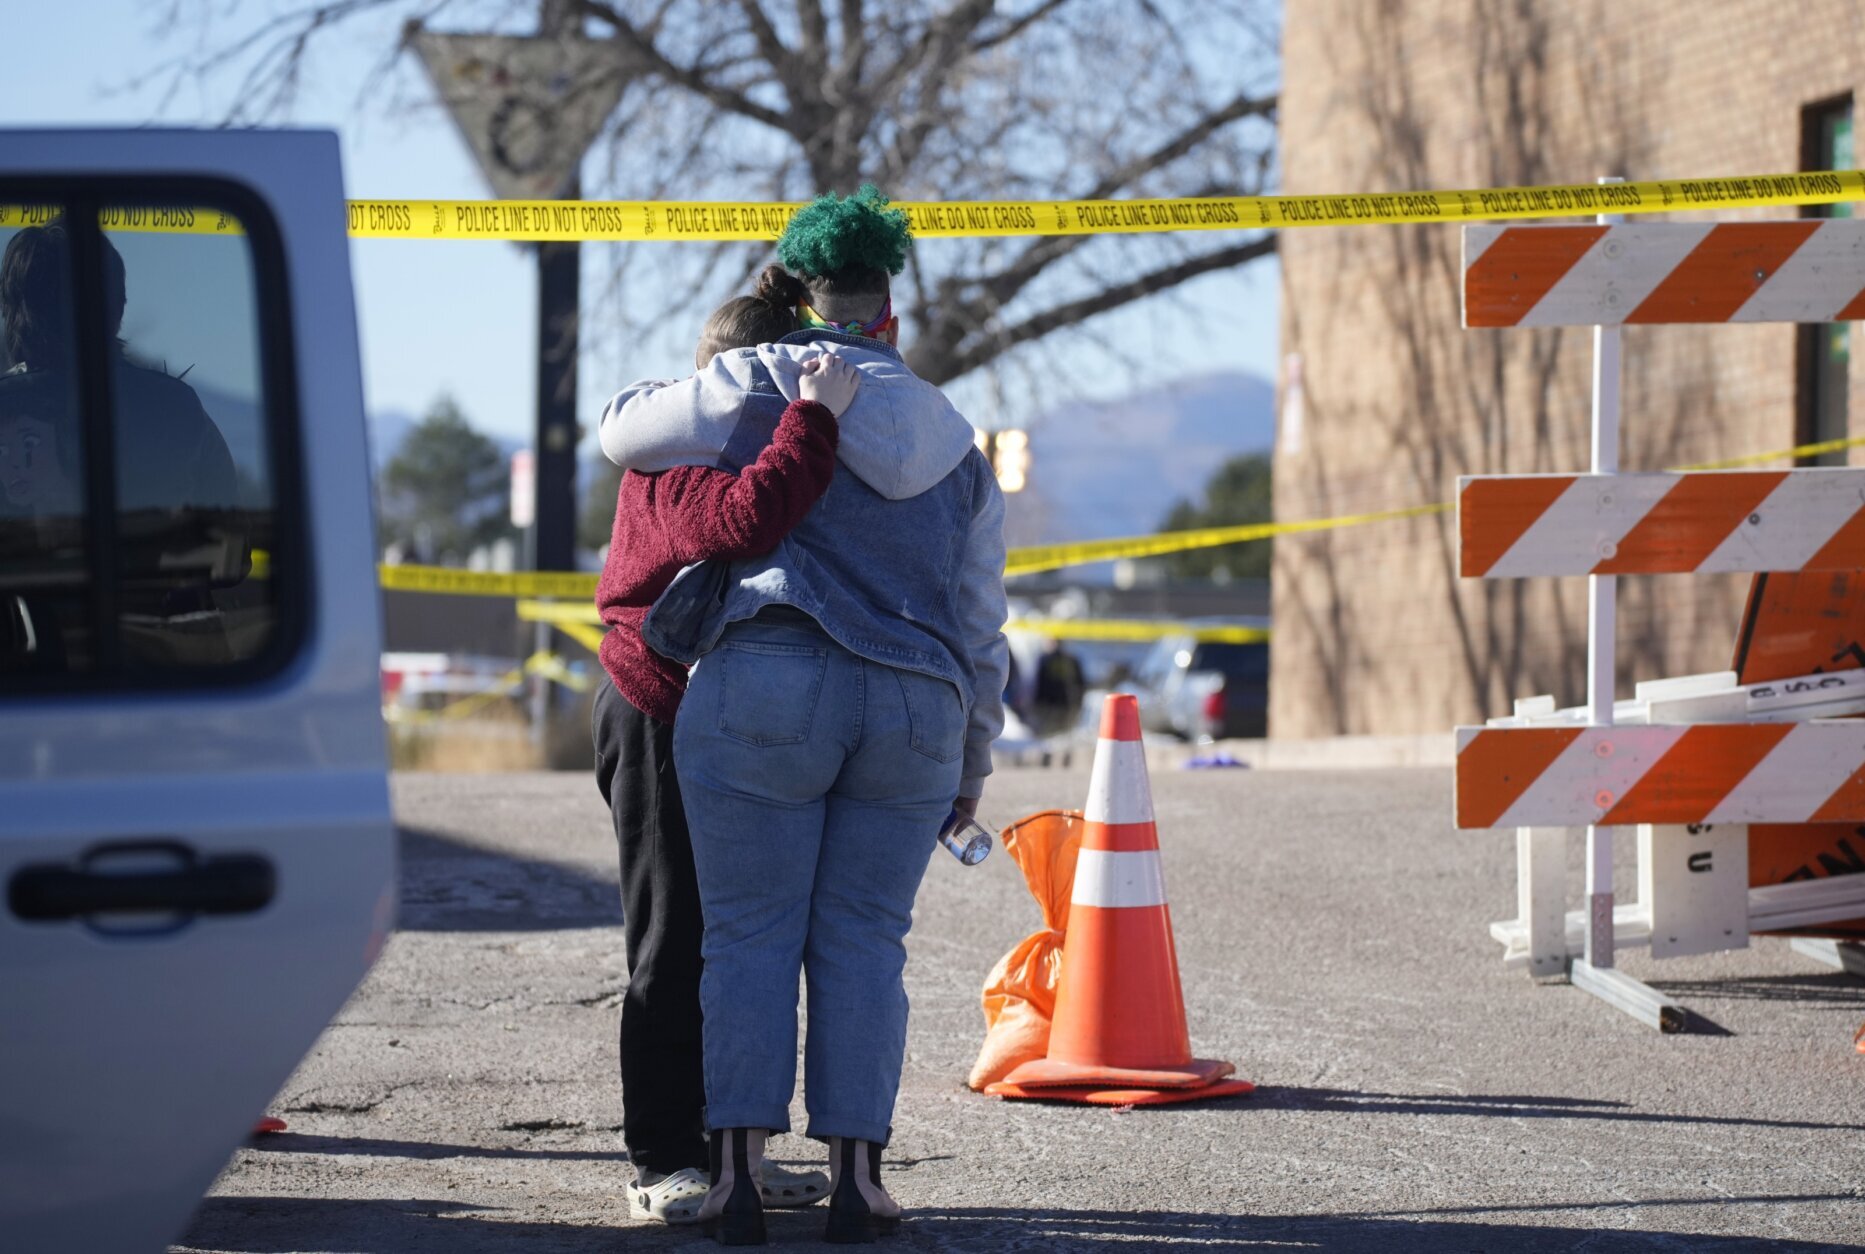 Defense Colorado gay club shooting suspect is nonbinary